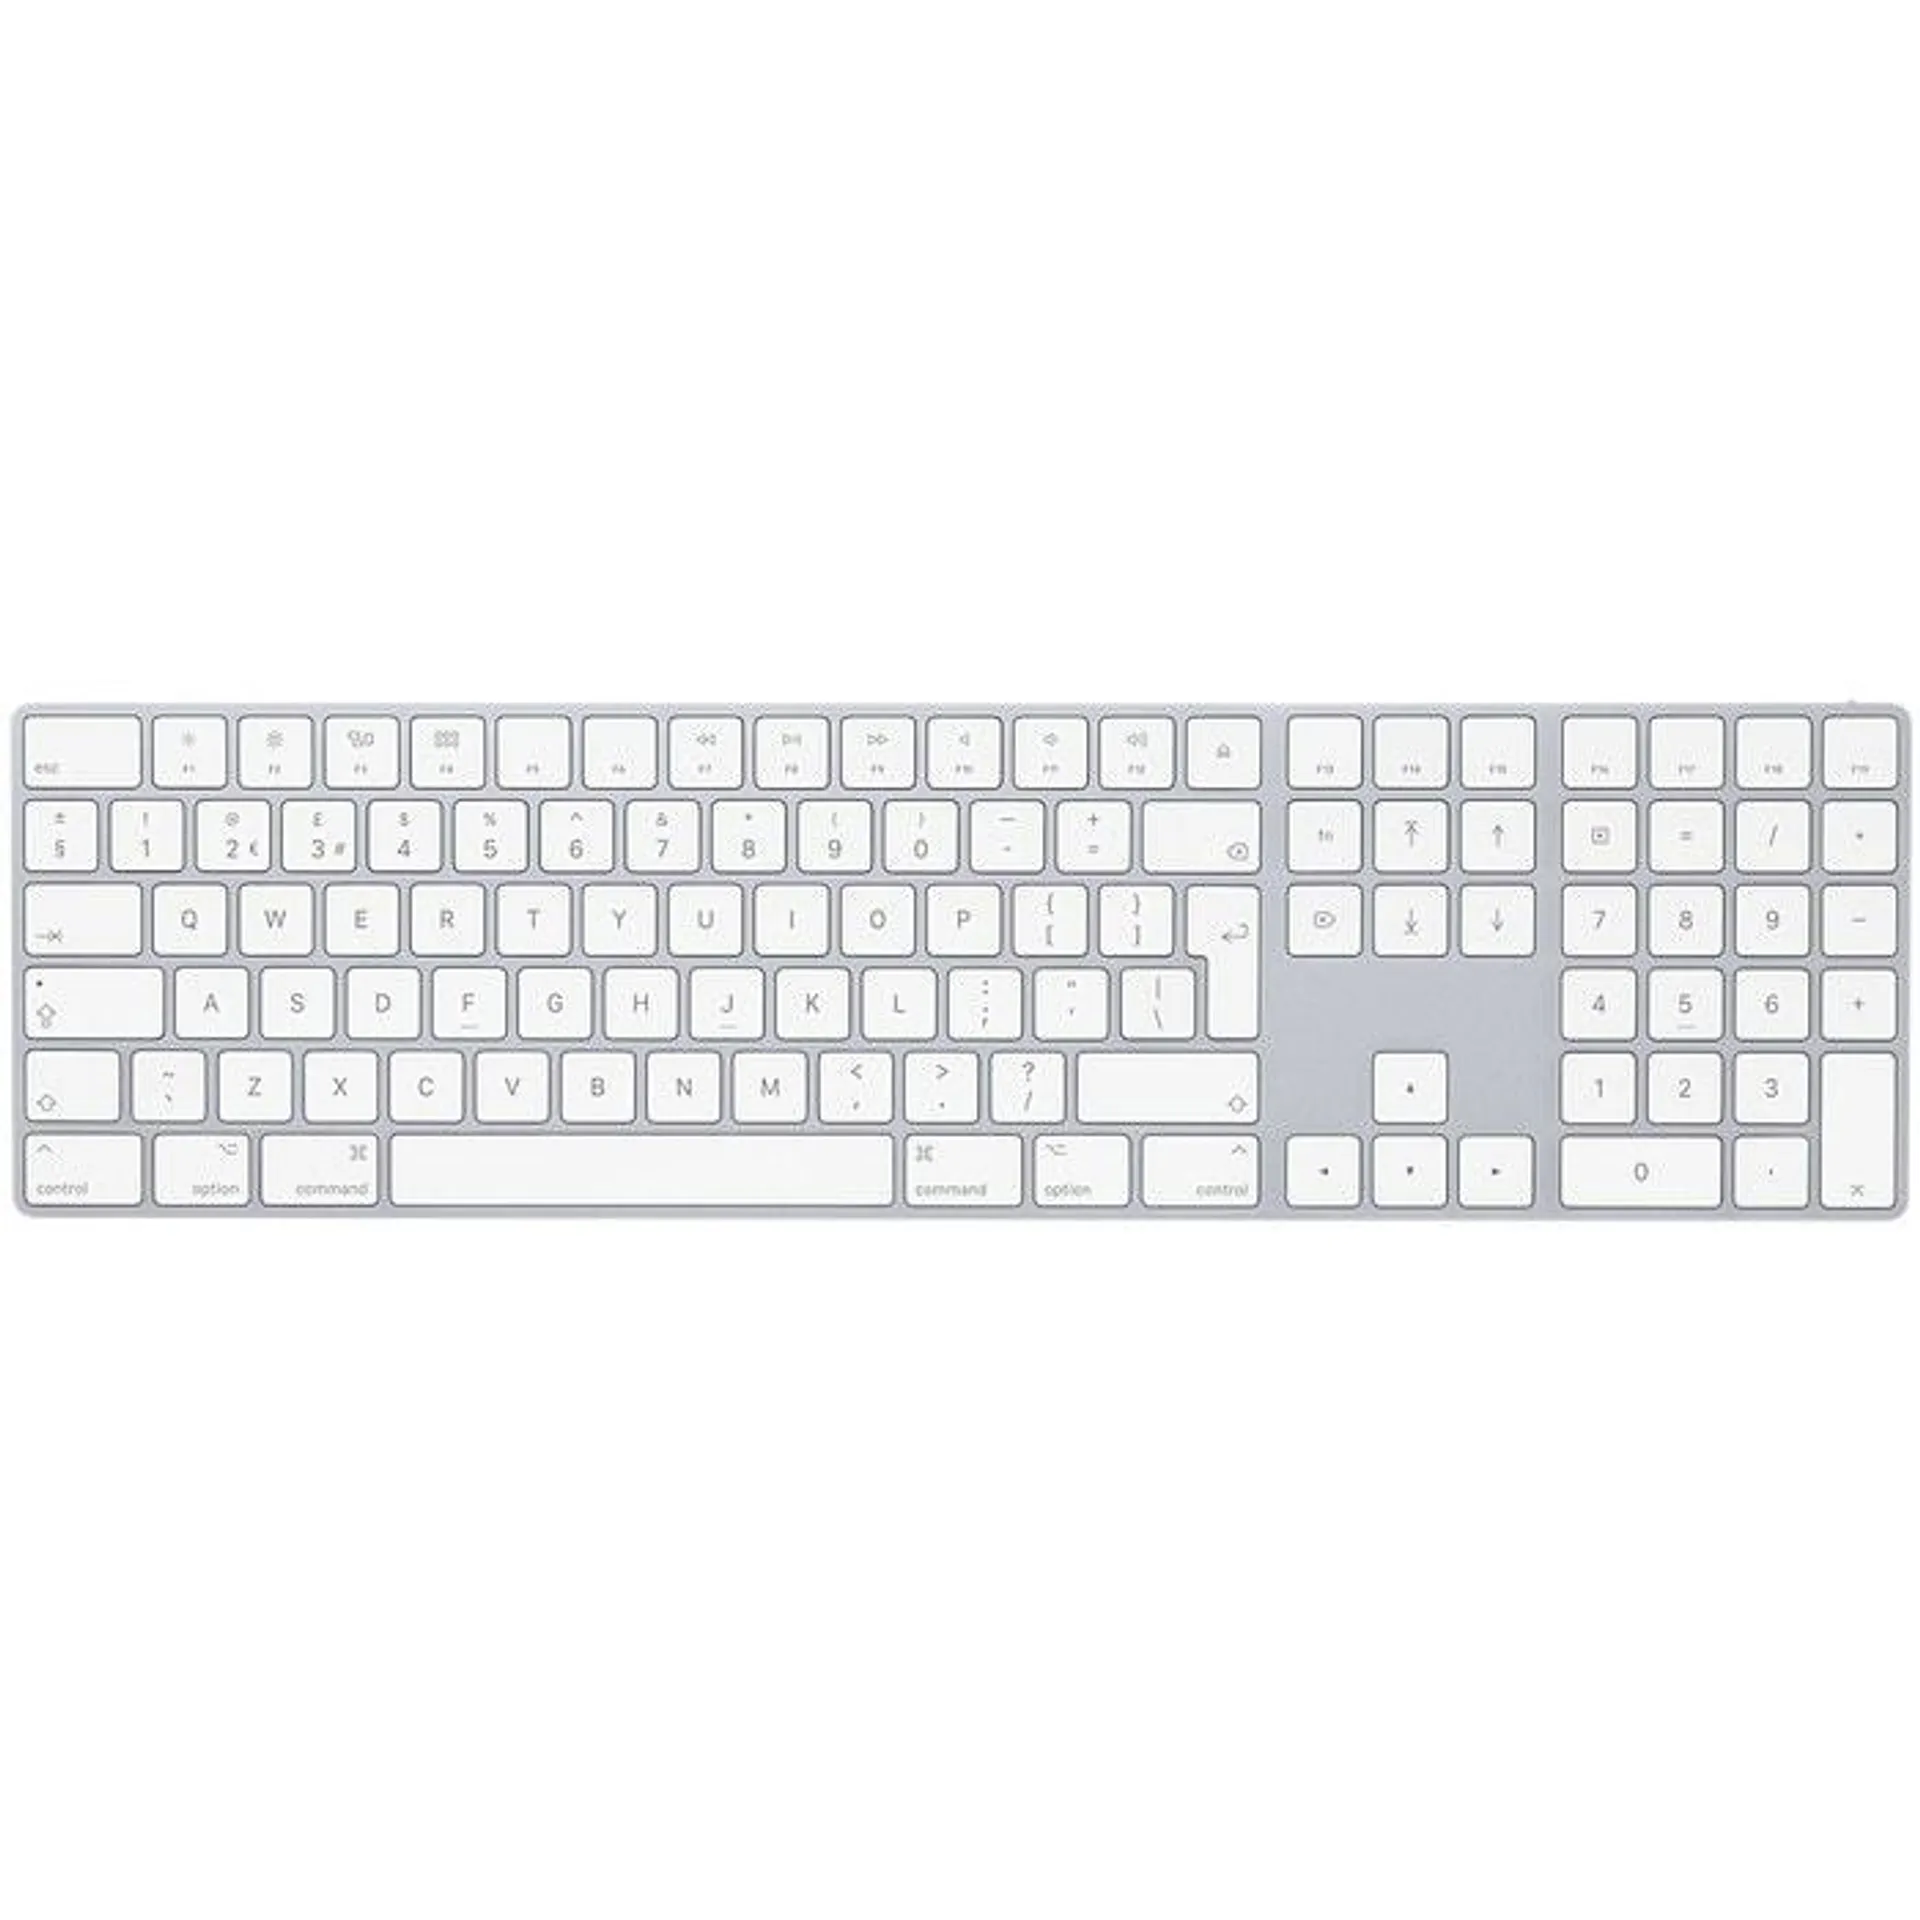 Apple Magic Keyboard with Numeric Keypad (International English) - White